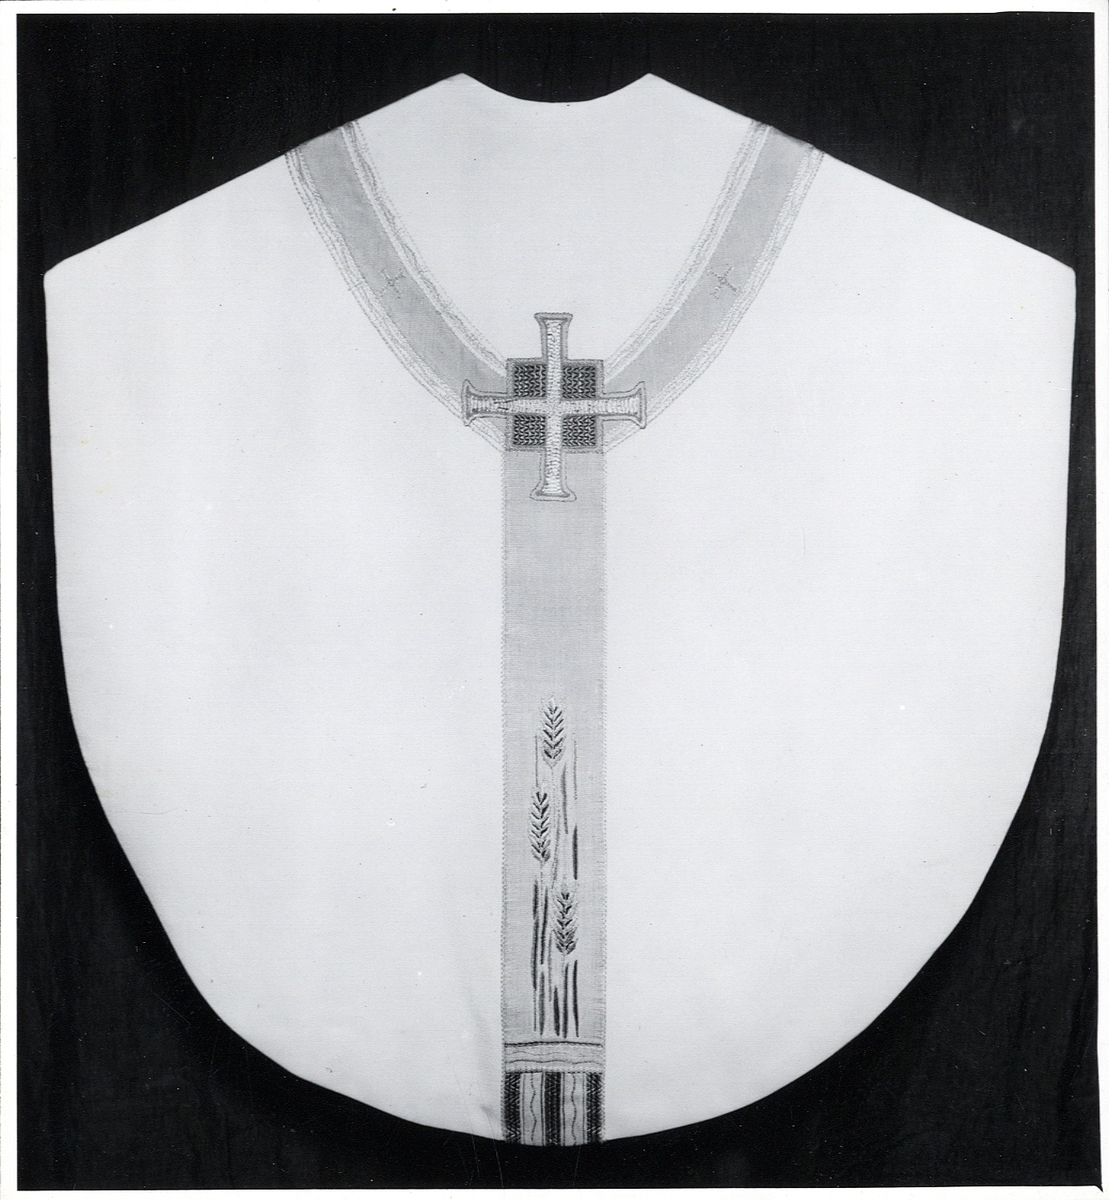 Foto (svart/vitt) av en ljus mässhake (baksidan) med något mörkare, broderat korsparti, prytt med bl a sädesax och liksidiga kors.

Inskrivet i huvudbok 1983.